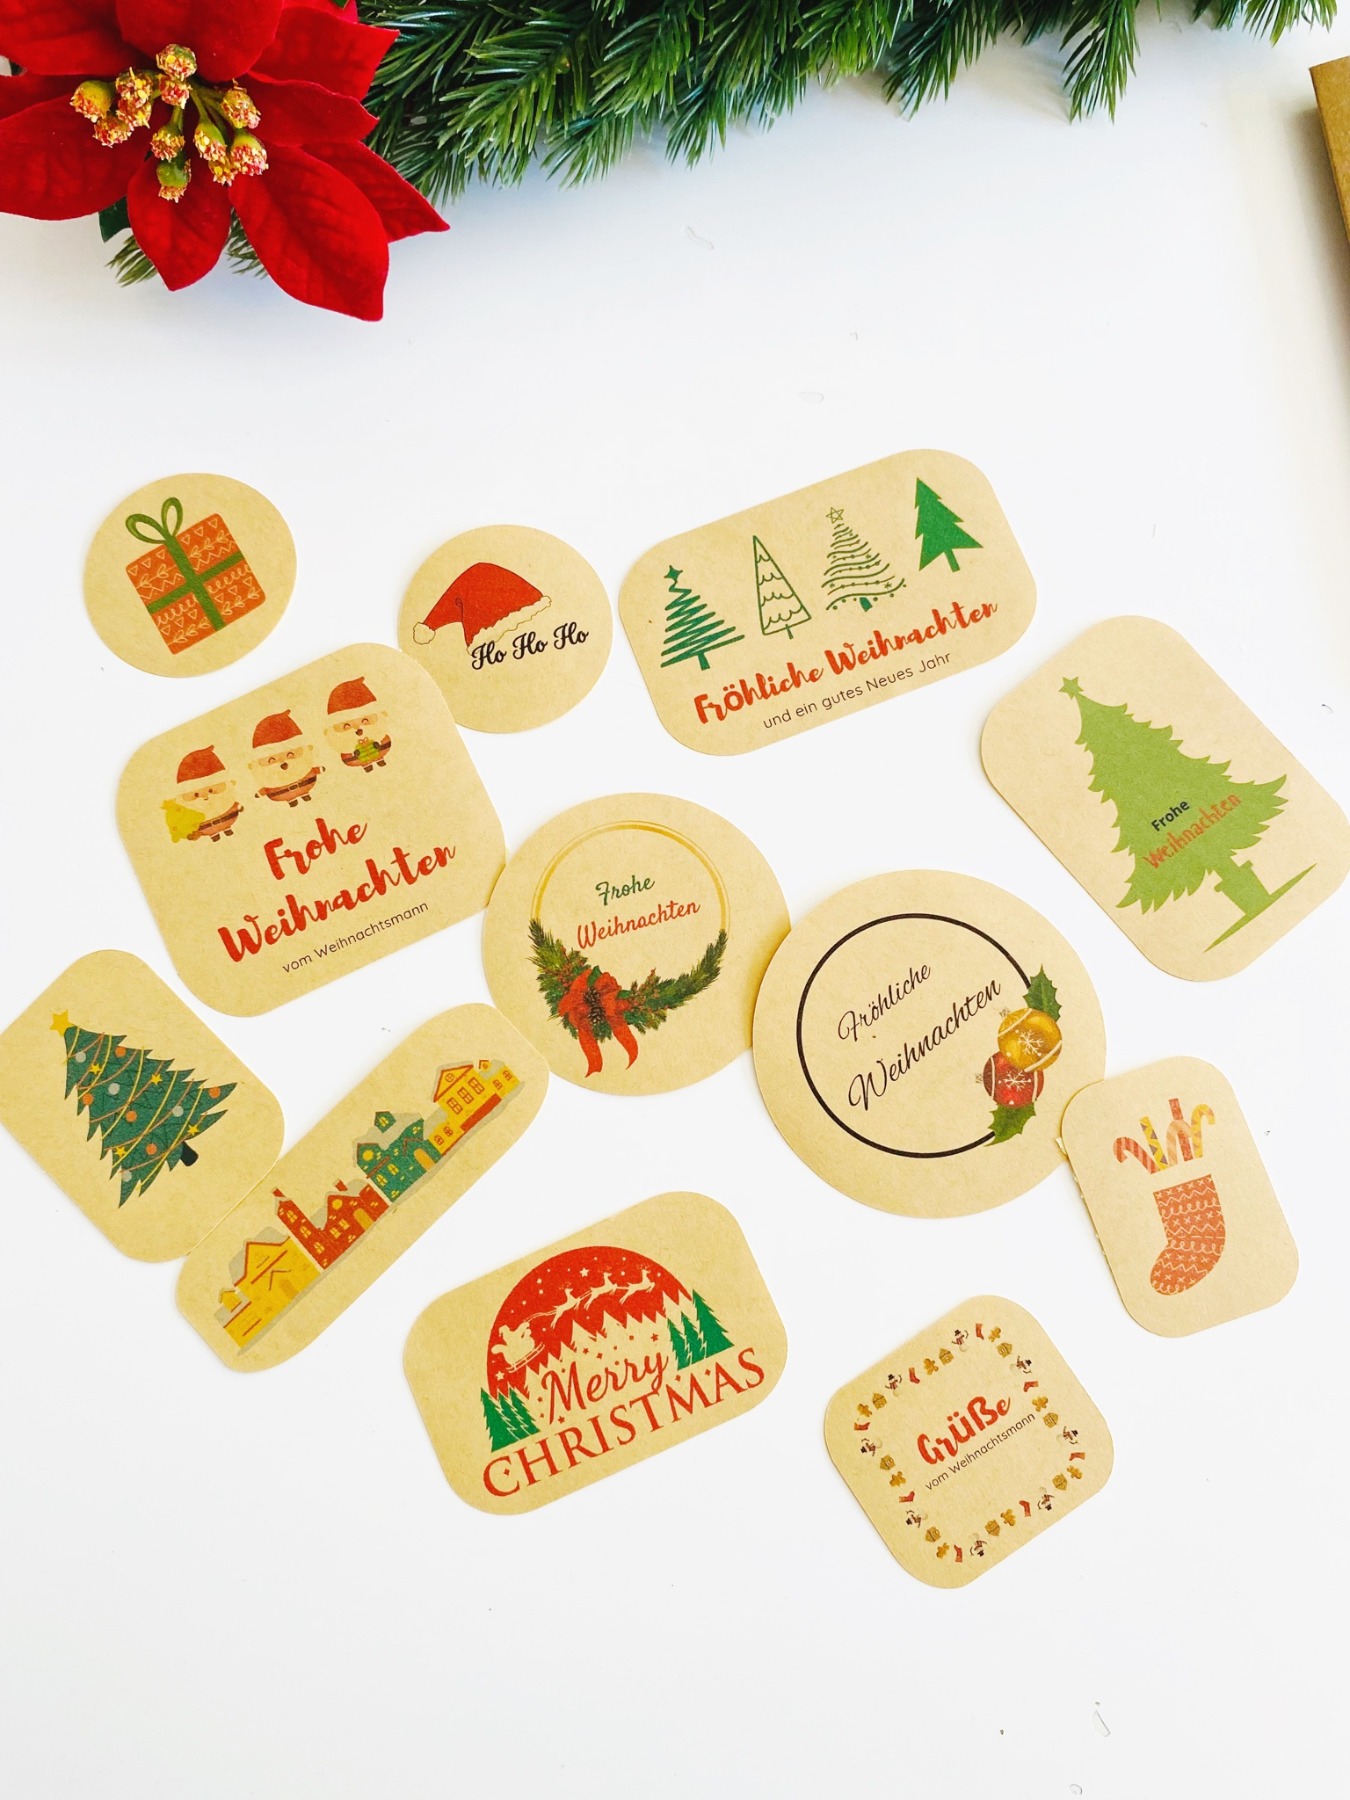 Bastelset für Weihnachten, DIY Kit Weihnachtskarten basteln, Weihnachtsgeschenke verpacken Ideen 11